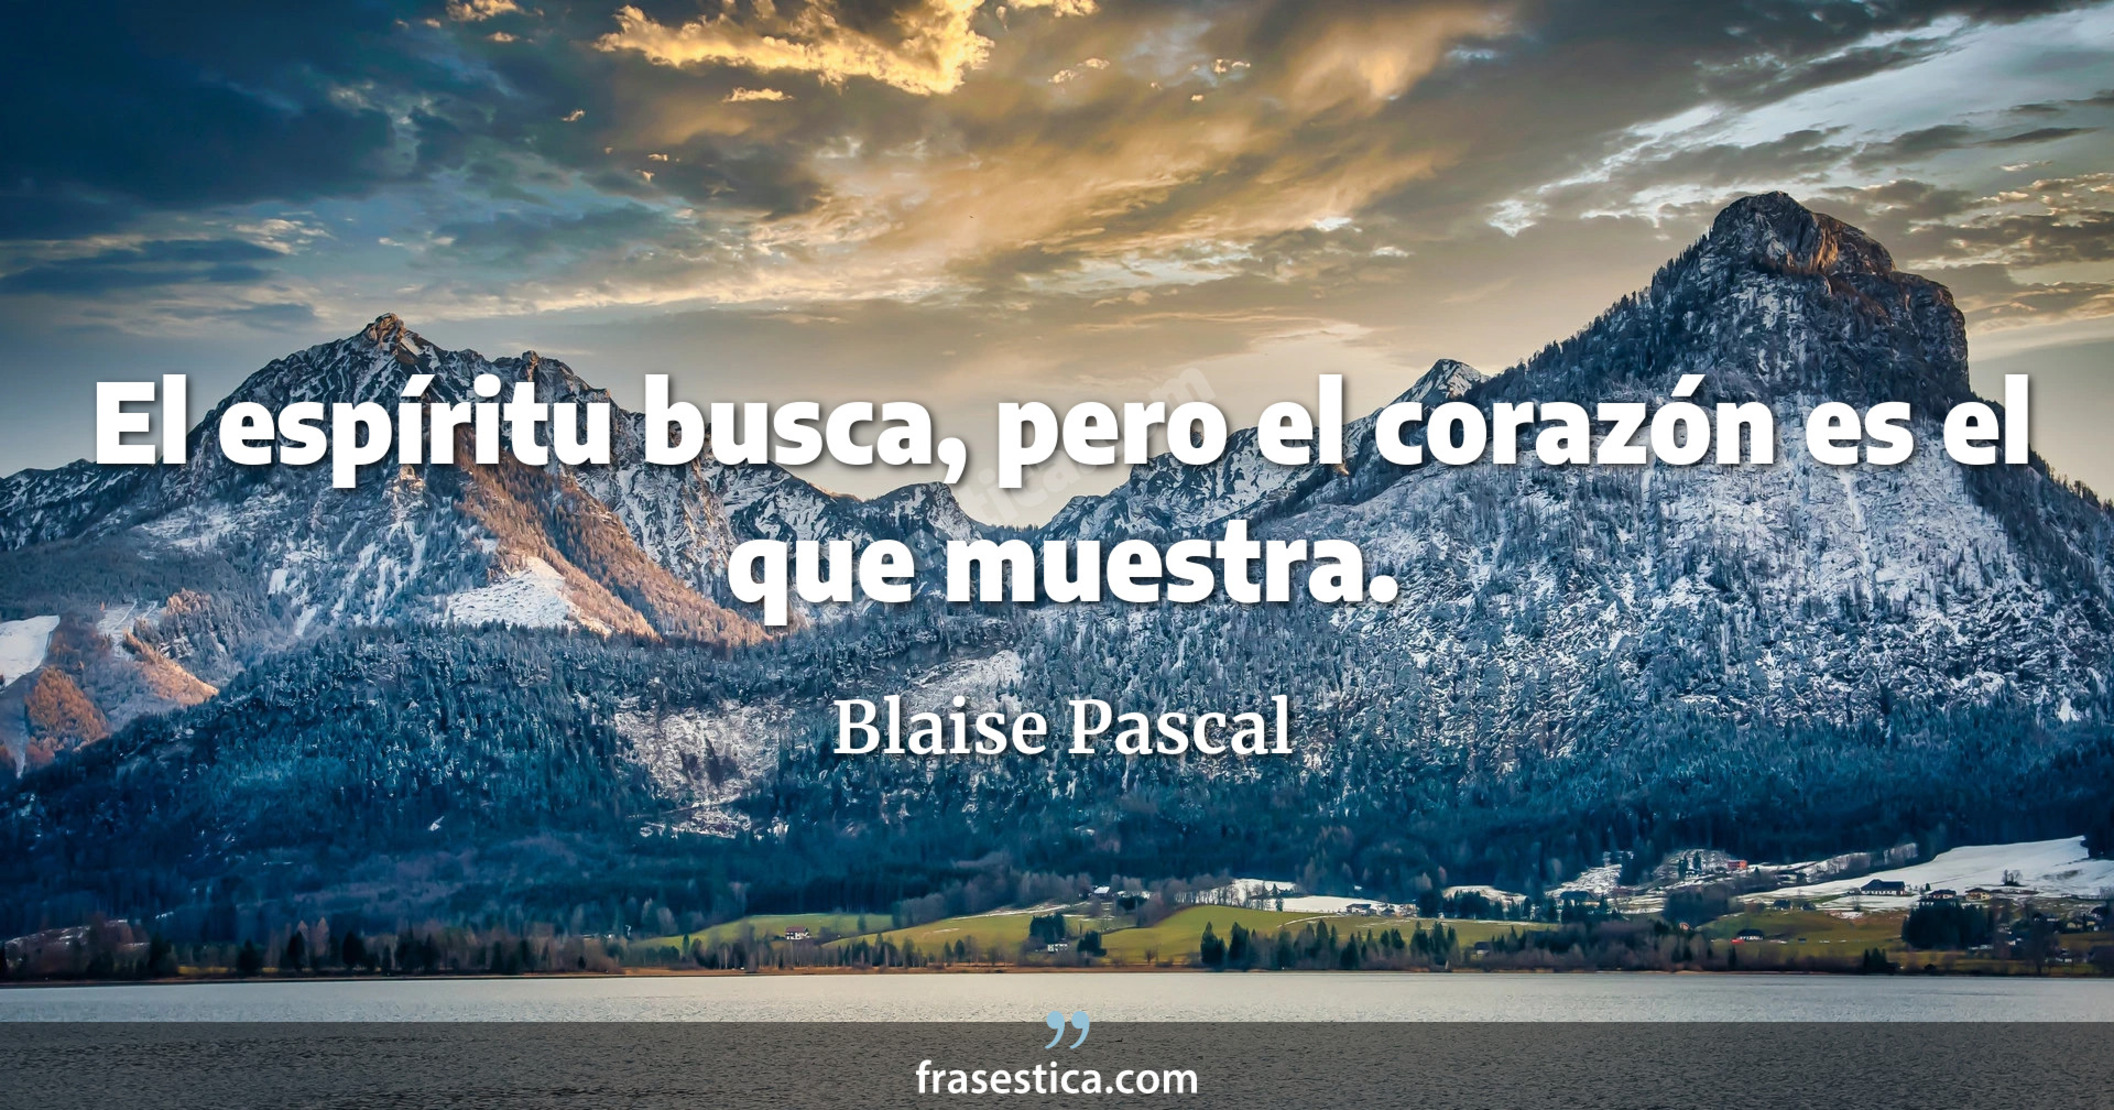 El espíritu busca, pero el corazón es el que muestra. - Blaise Pascal